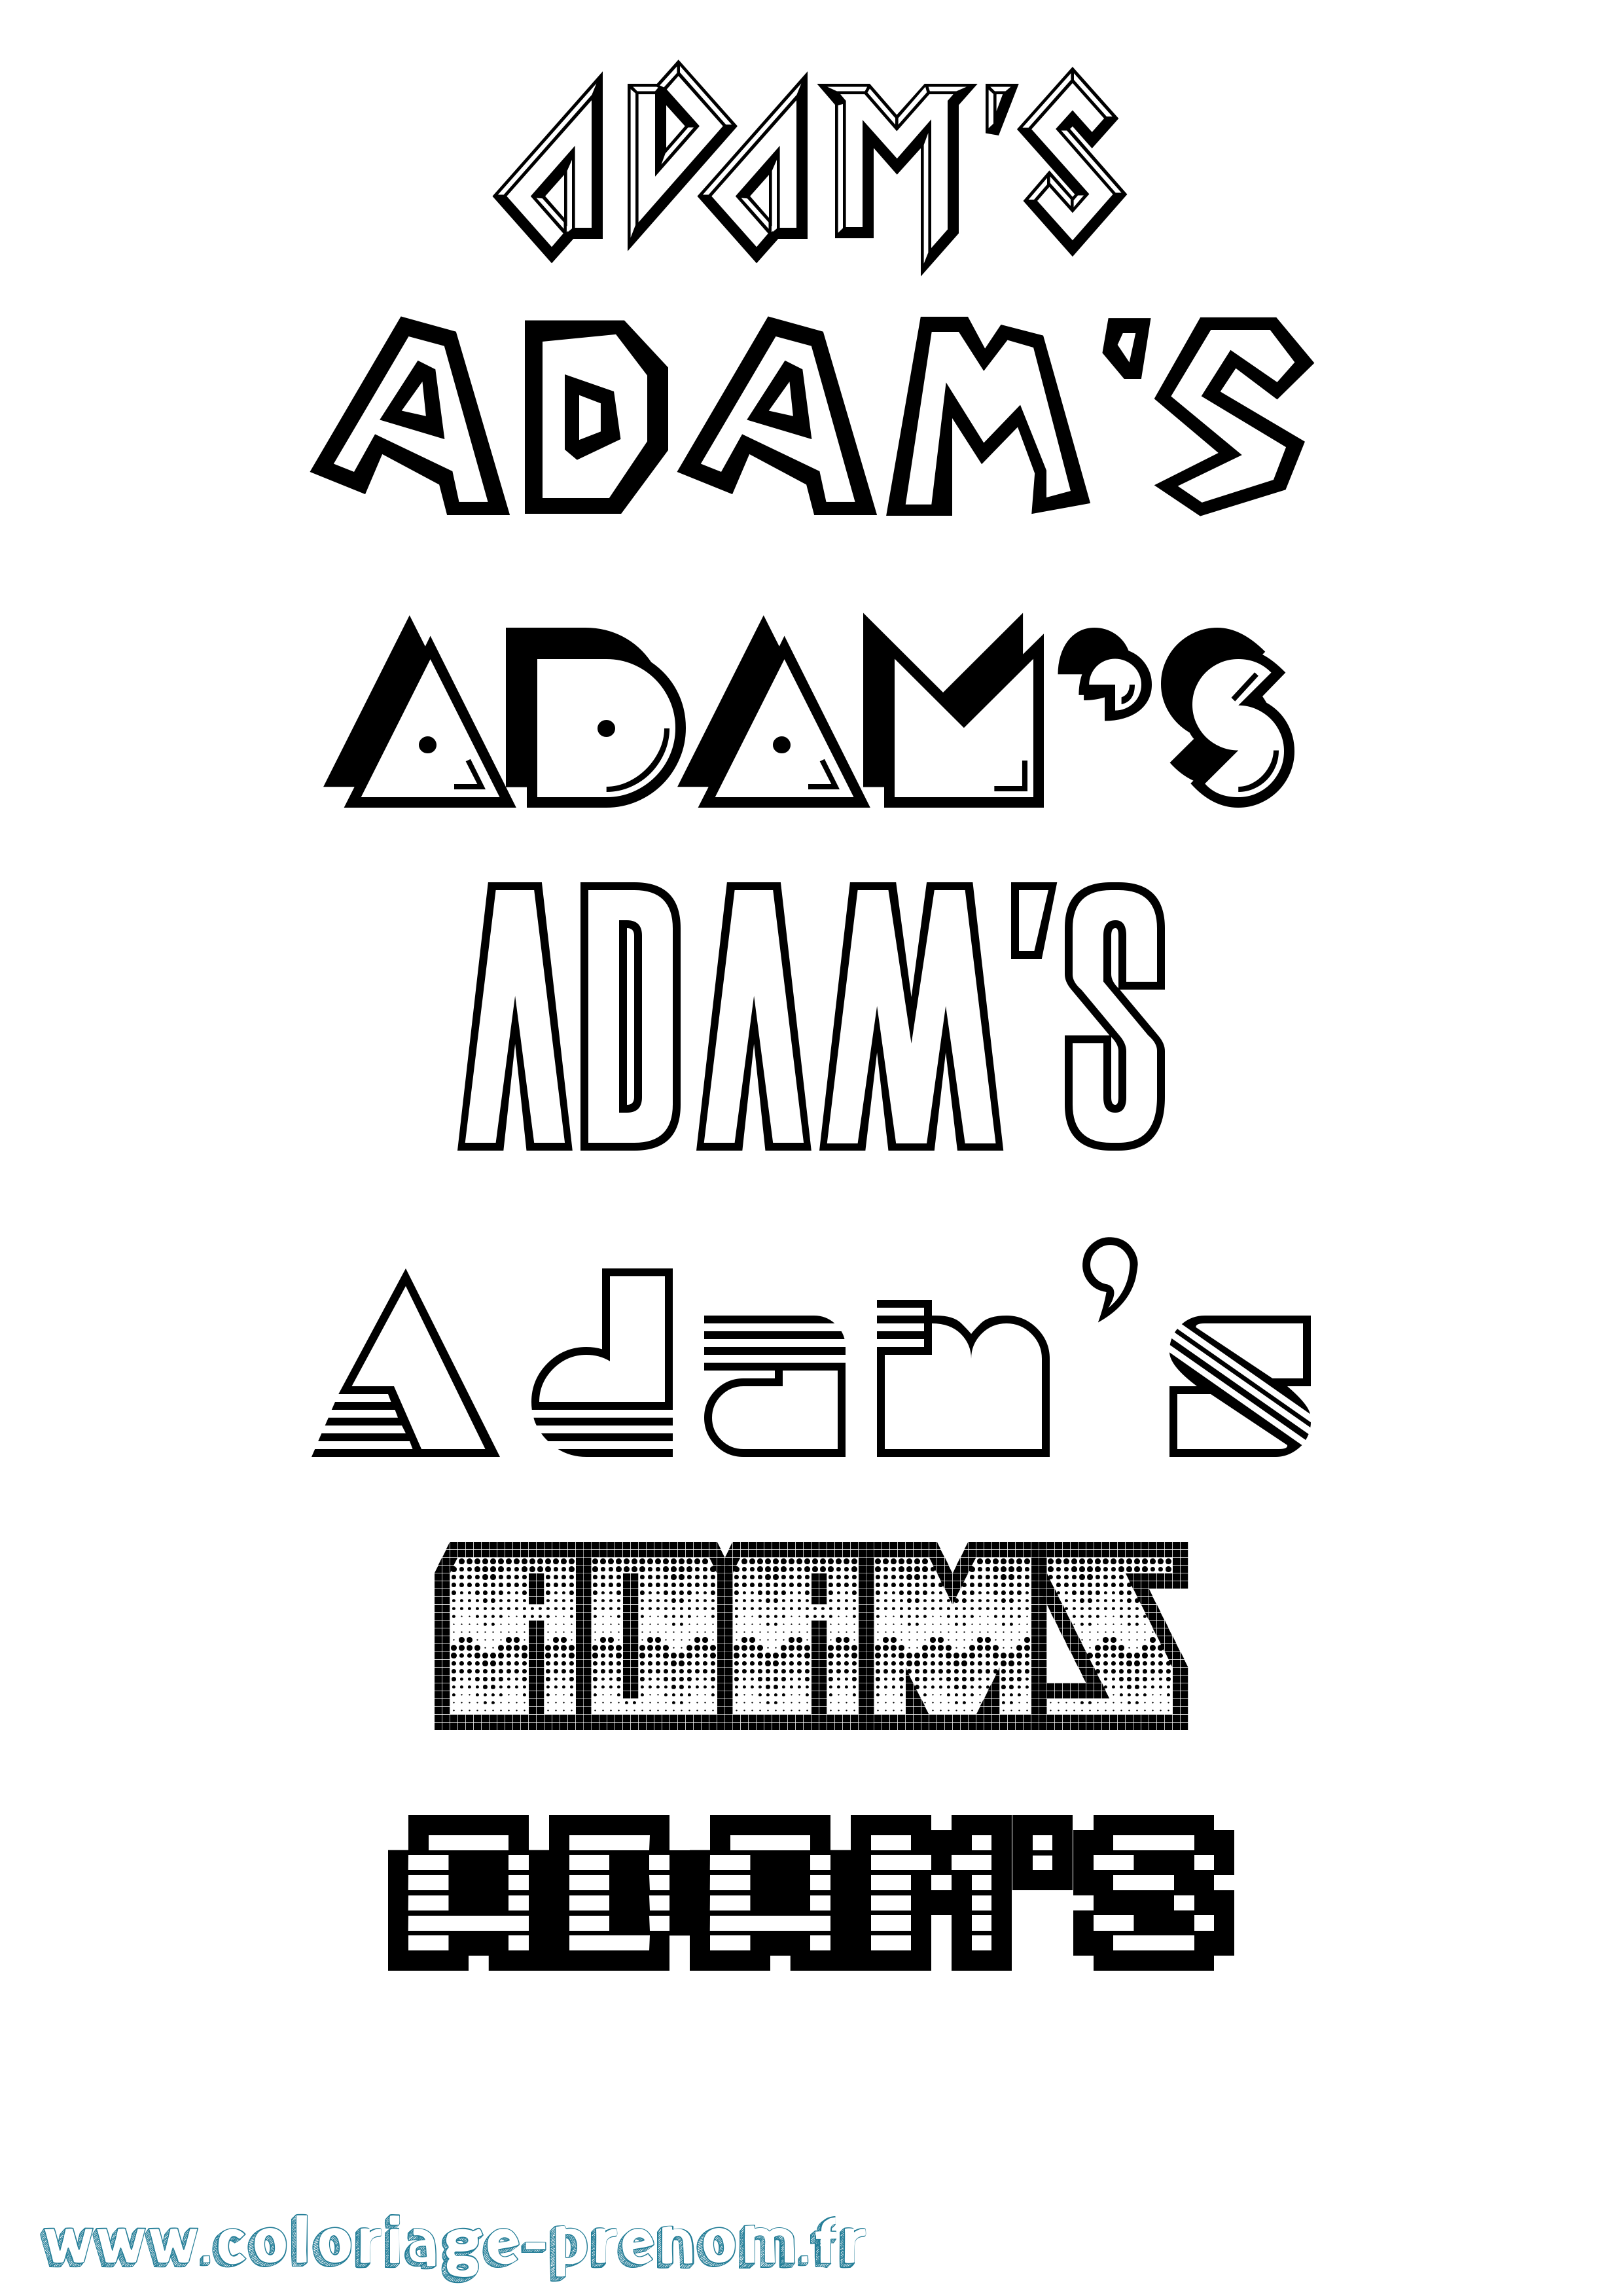 Coloriage prénom Adam'S Jeux Vidéos